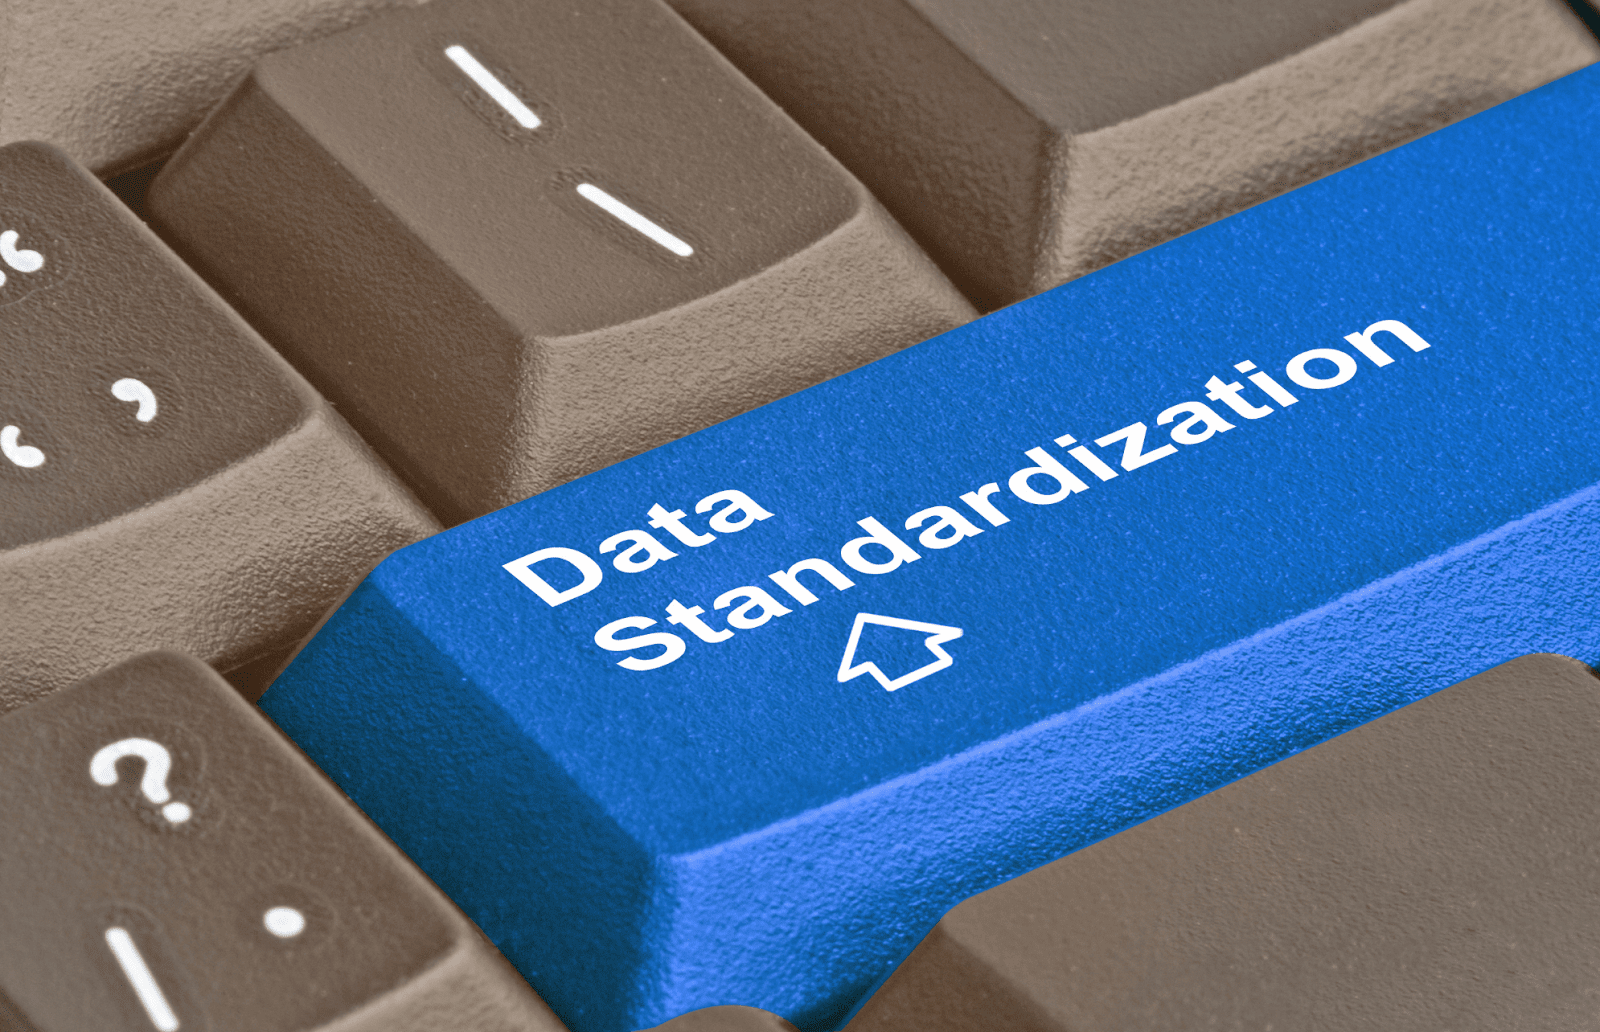 Data Stangdardization